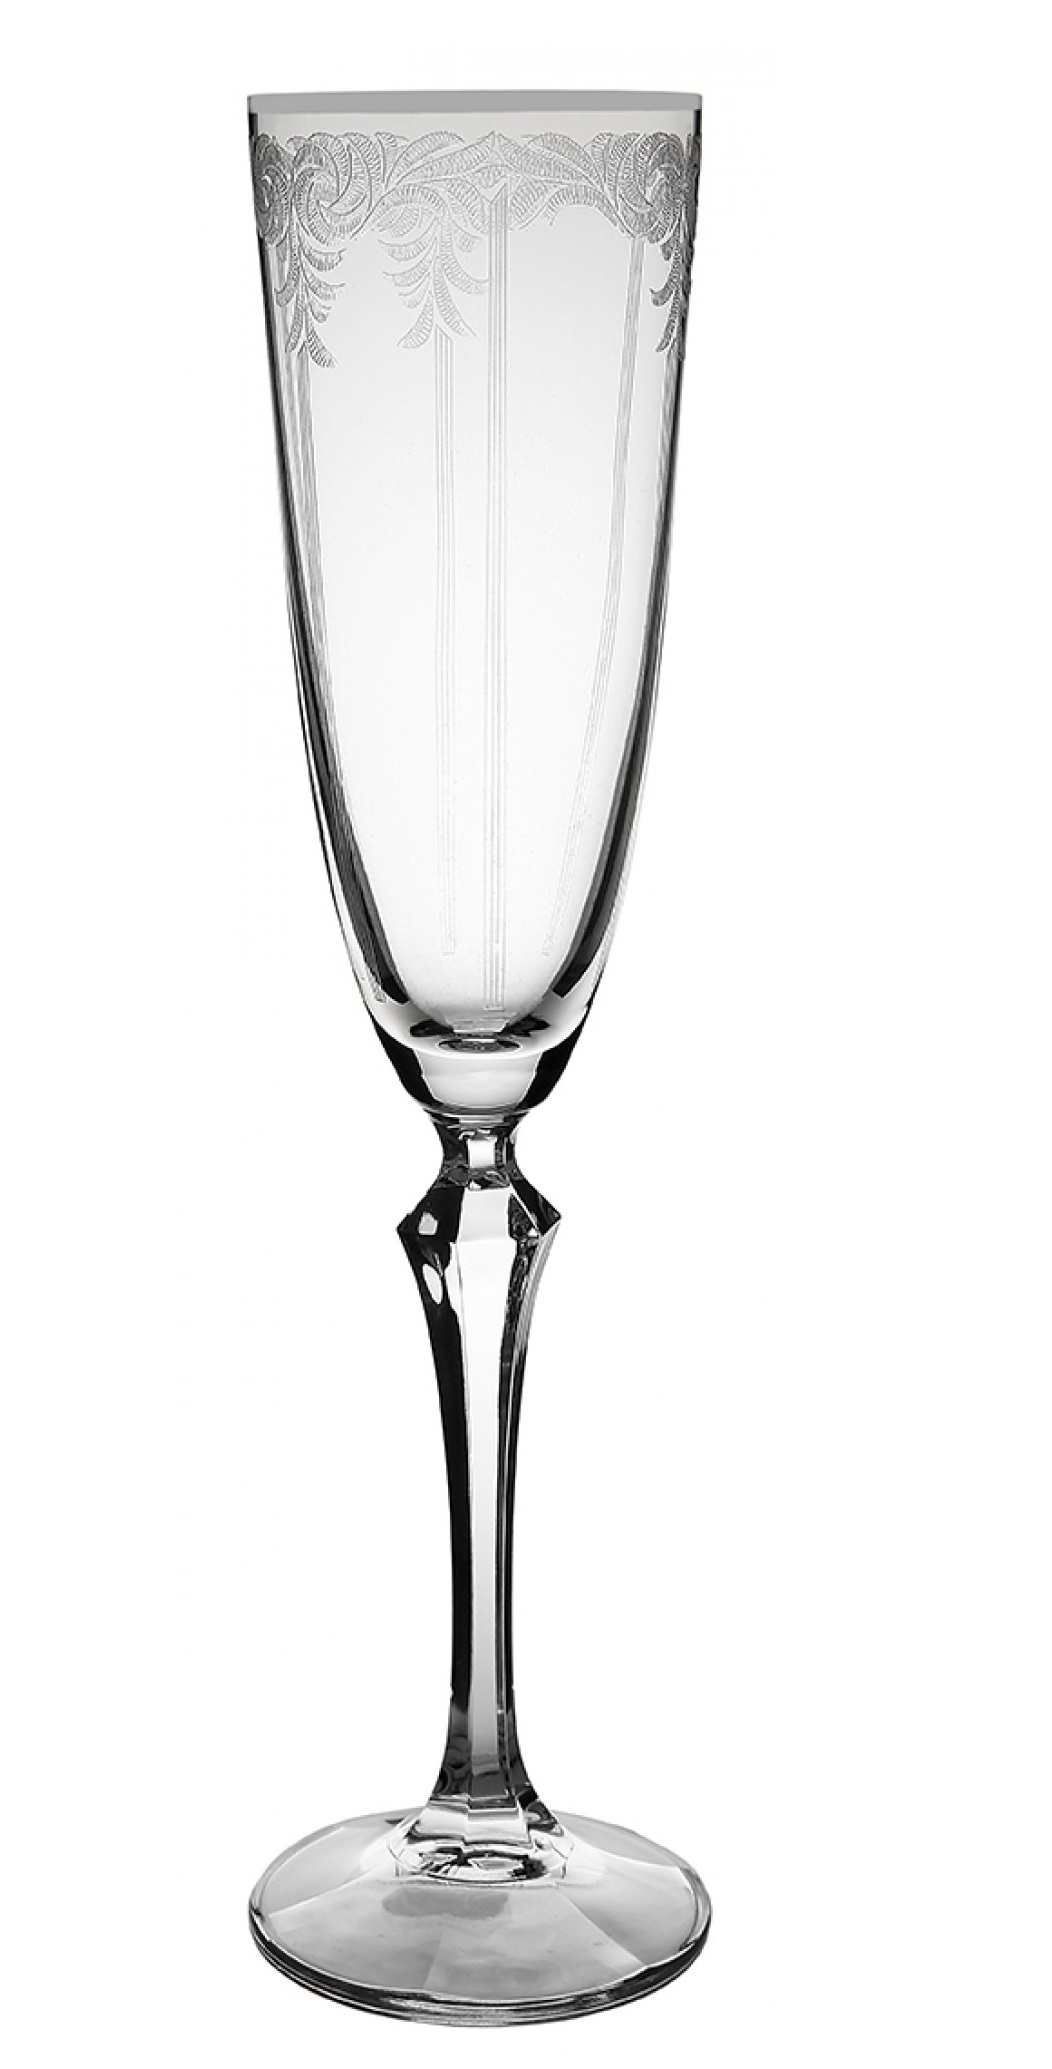 Ποτήρι Σαμπάνιας Κολωνάτο Κρυστάλλινο Διάφανο 200ml Flute Elisabeth - Q8106/S Bohemia CLX08106024 